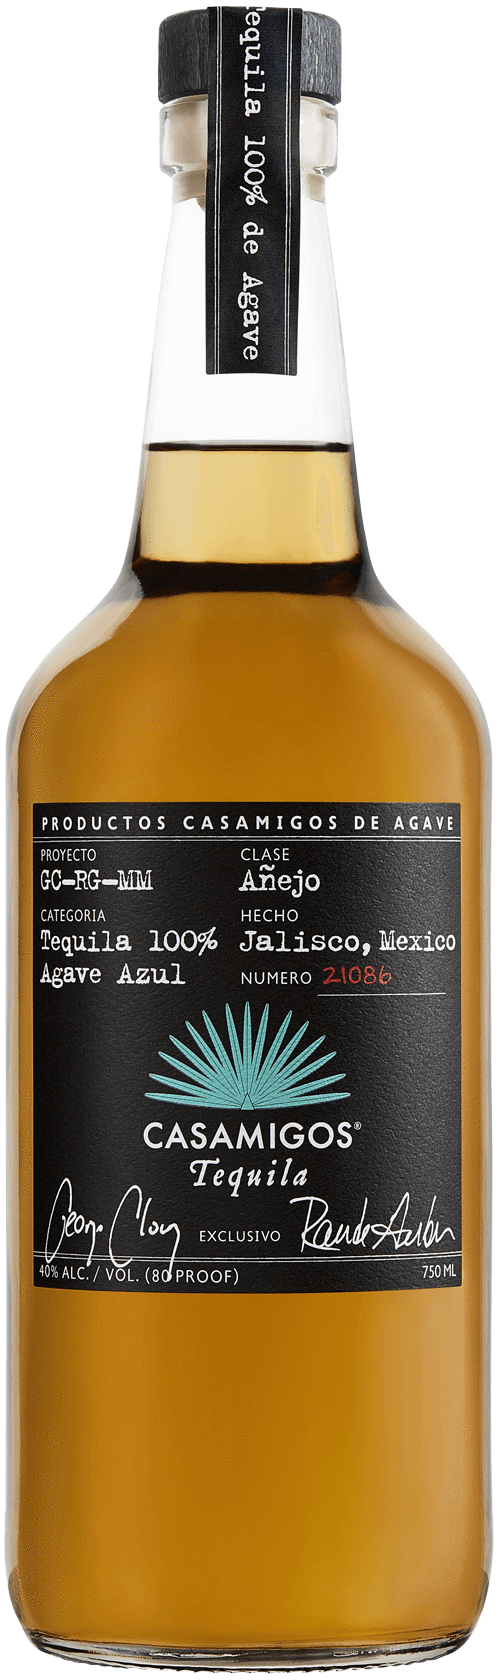 Buy Casamigos Añejo Tequila Online